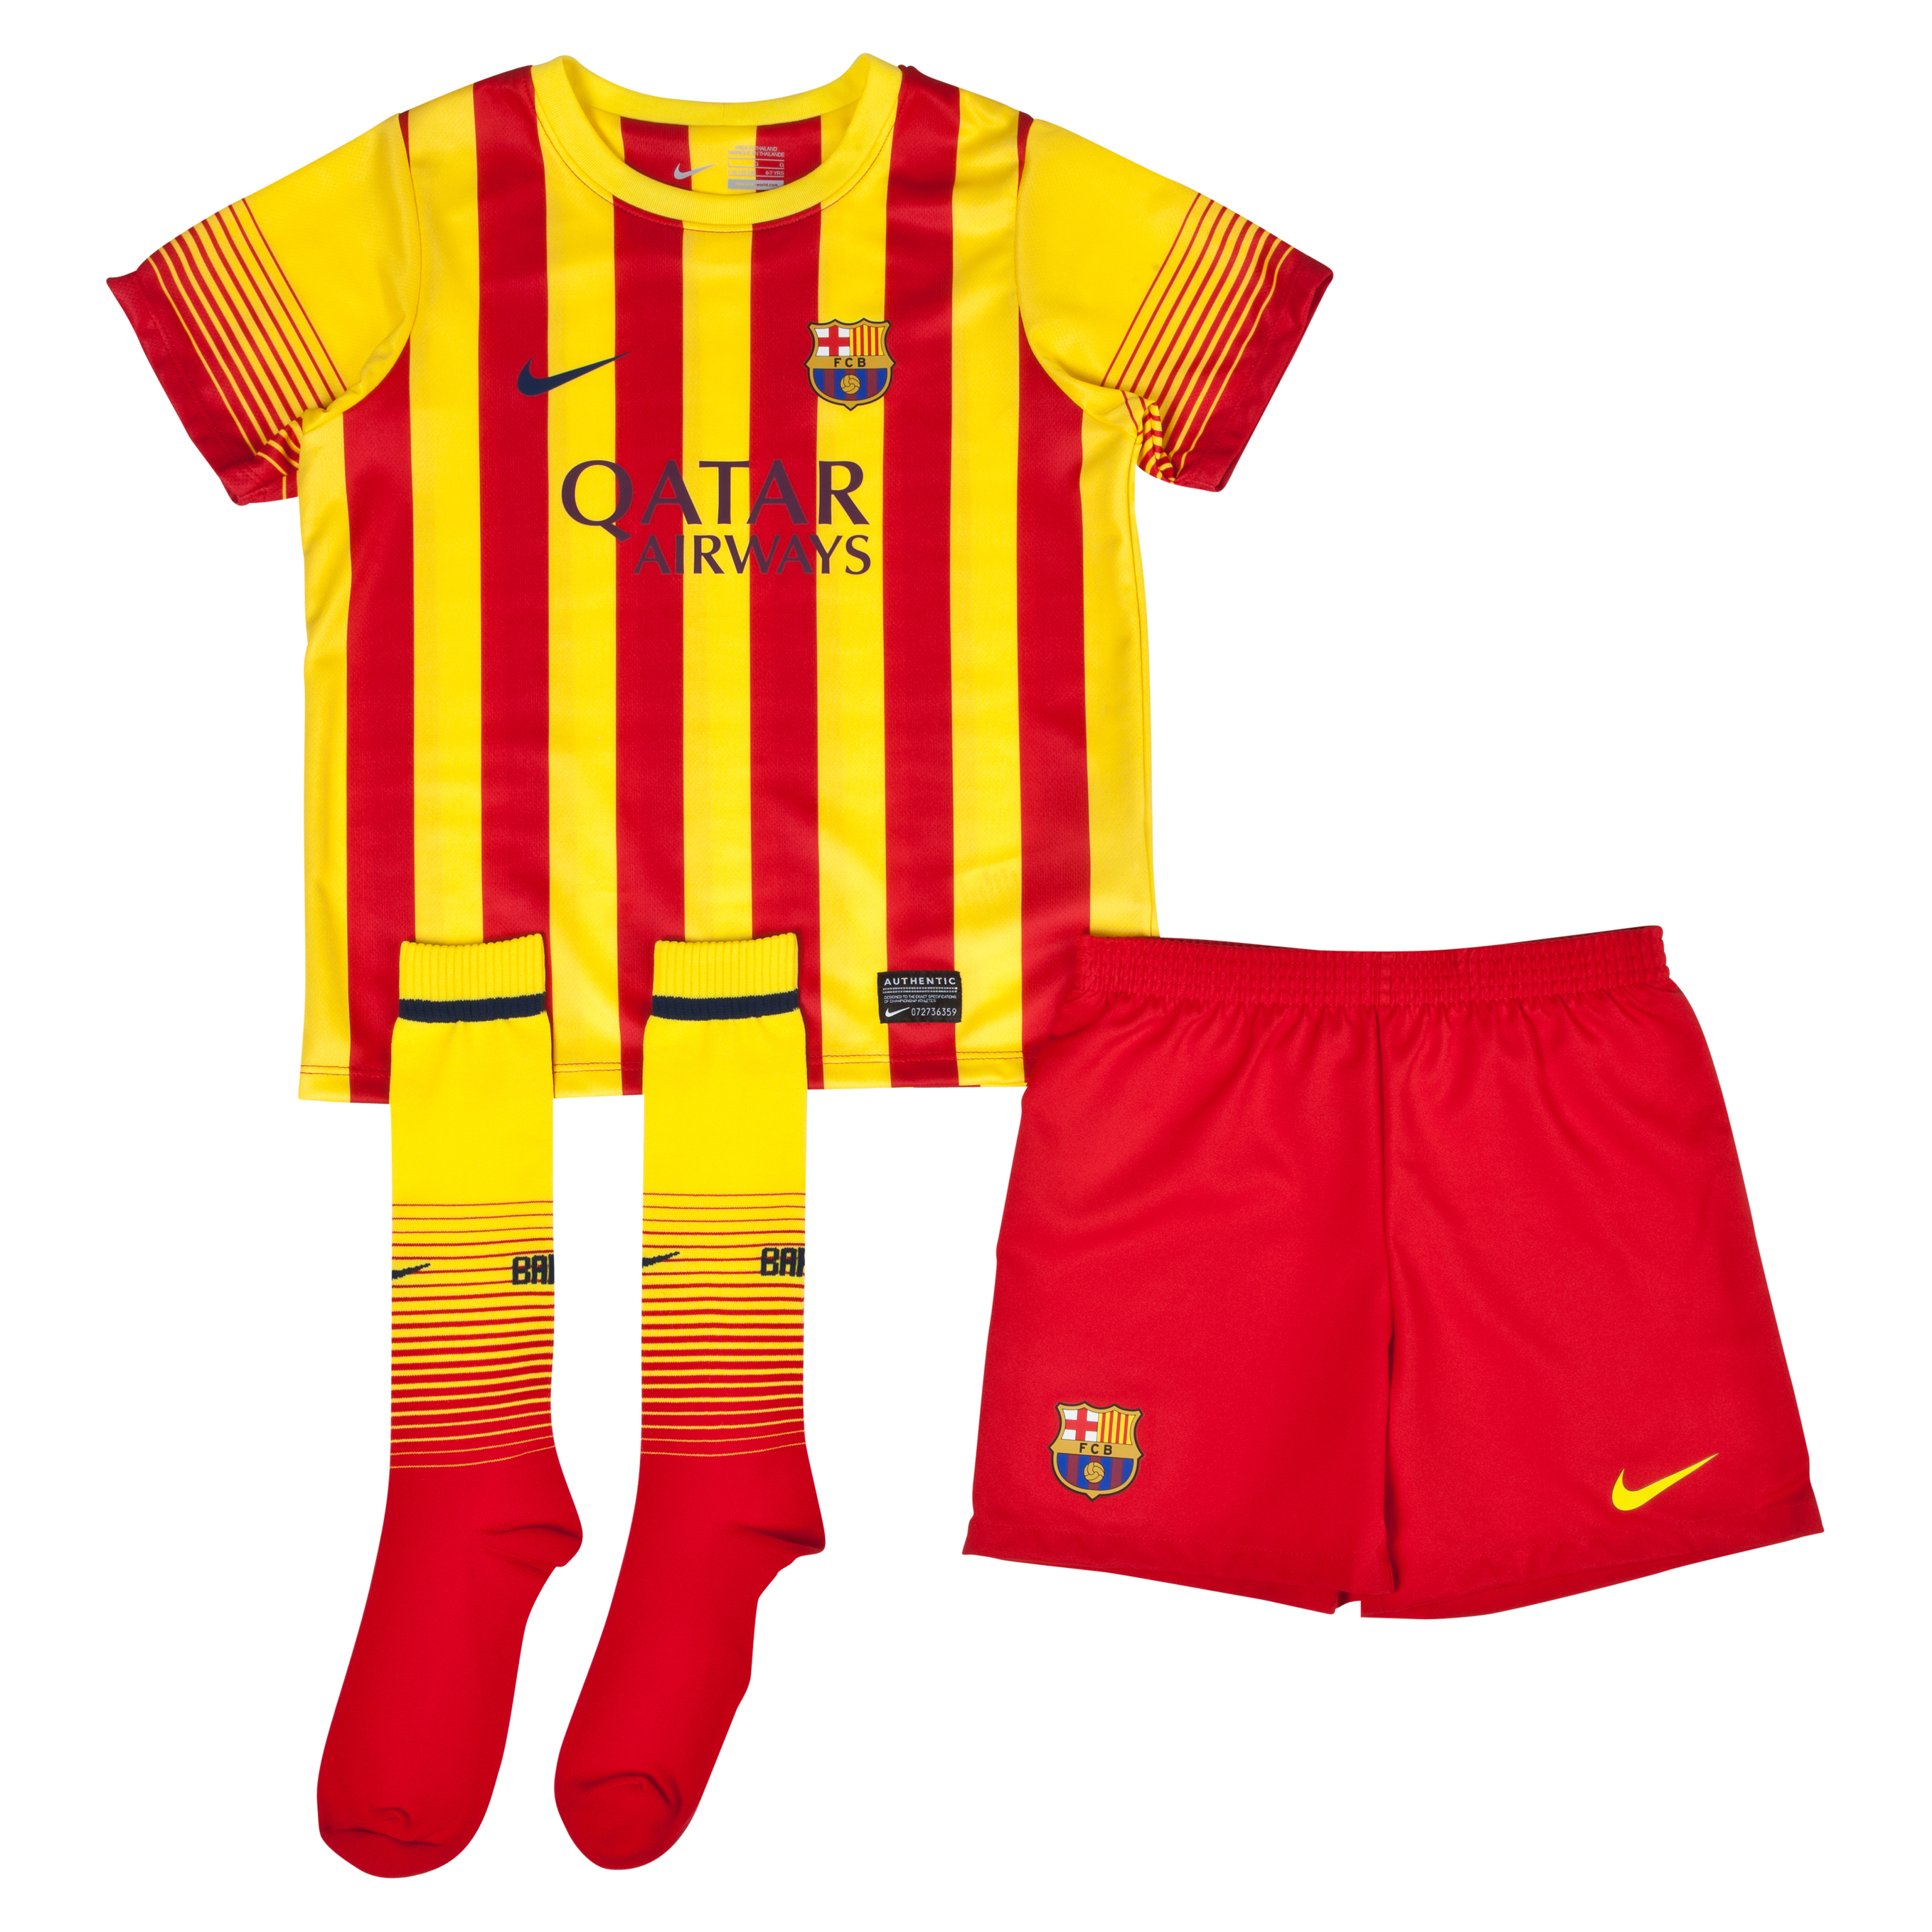 Barcelona Away Kit 2013/14 - Little Boys